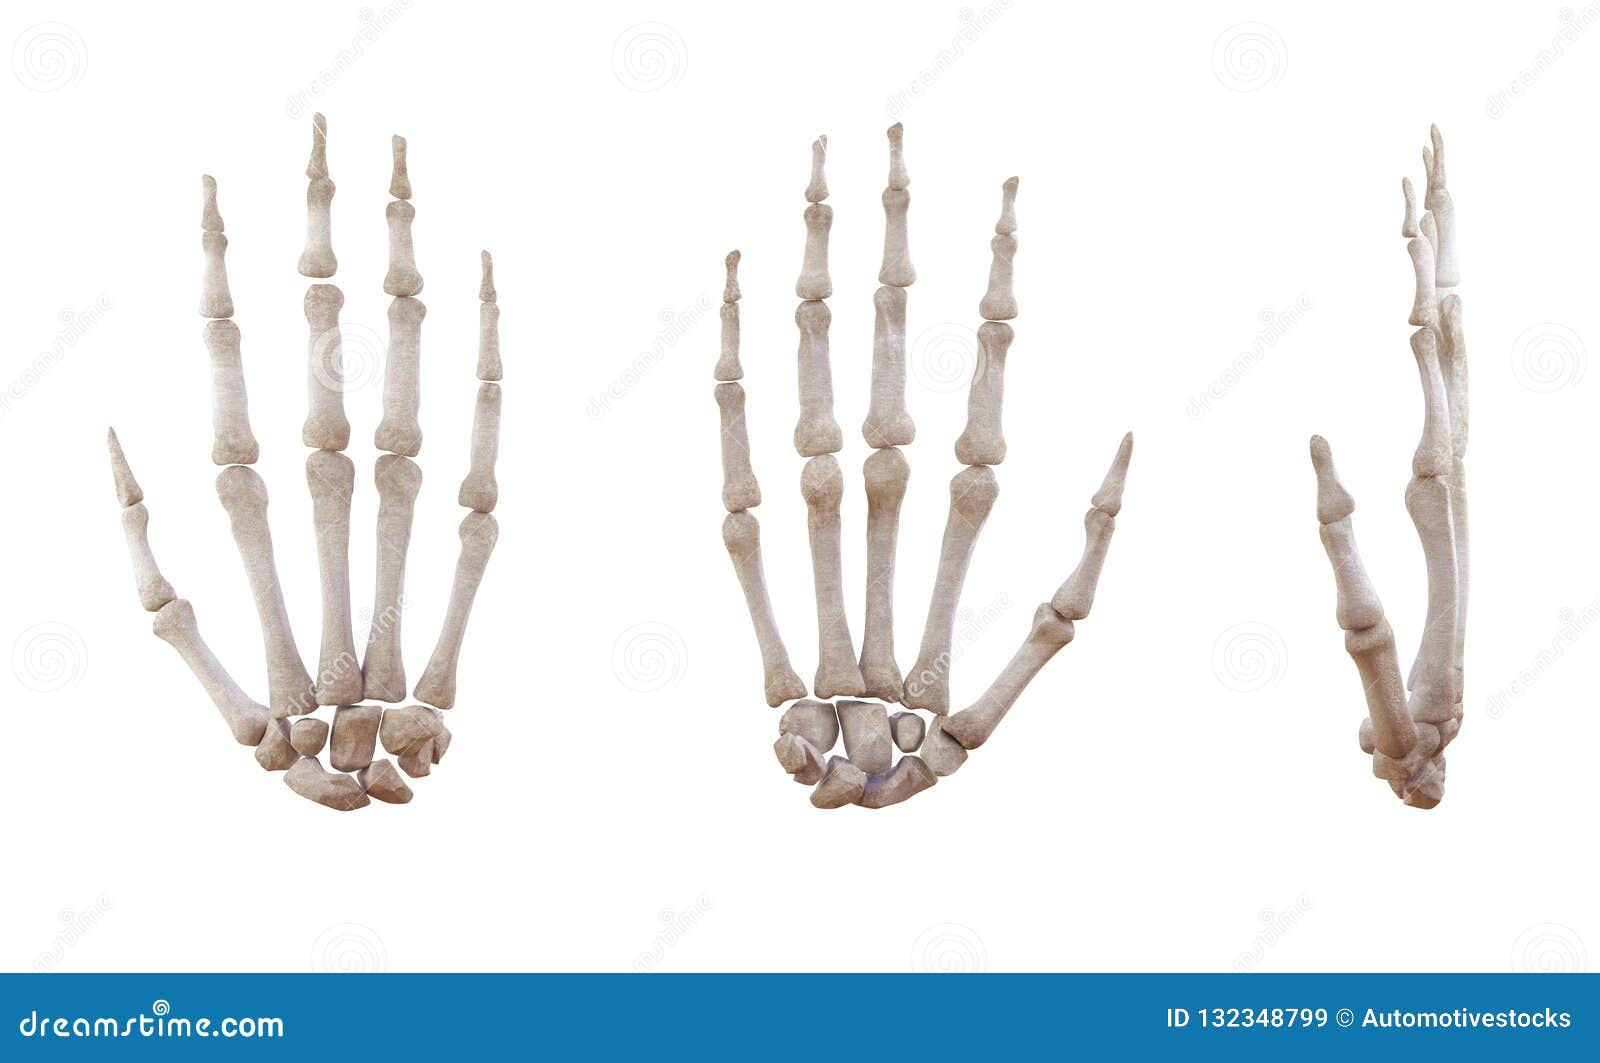 Изолированные косточки человеческой руки каркасные. Косточки человеческой руки каркасные изолированные на белой, боковой и anterior проекции Воспитательная медицинская иллюстрация иллюстрация 3d